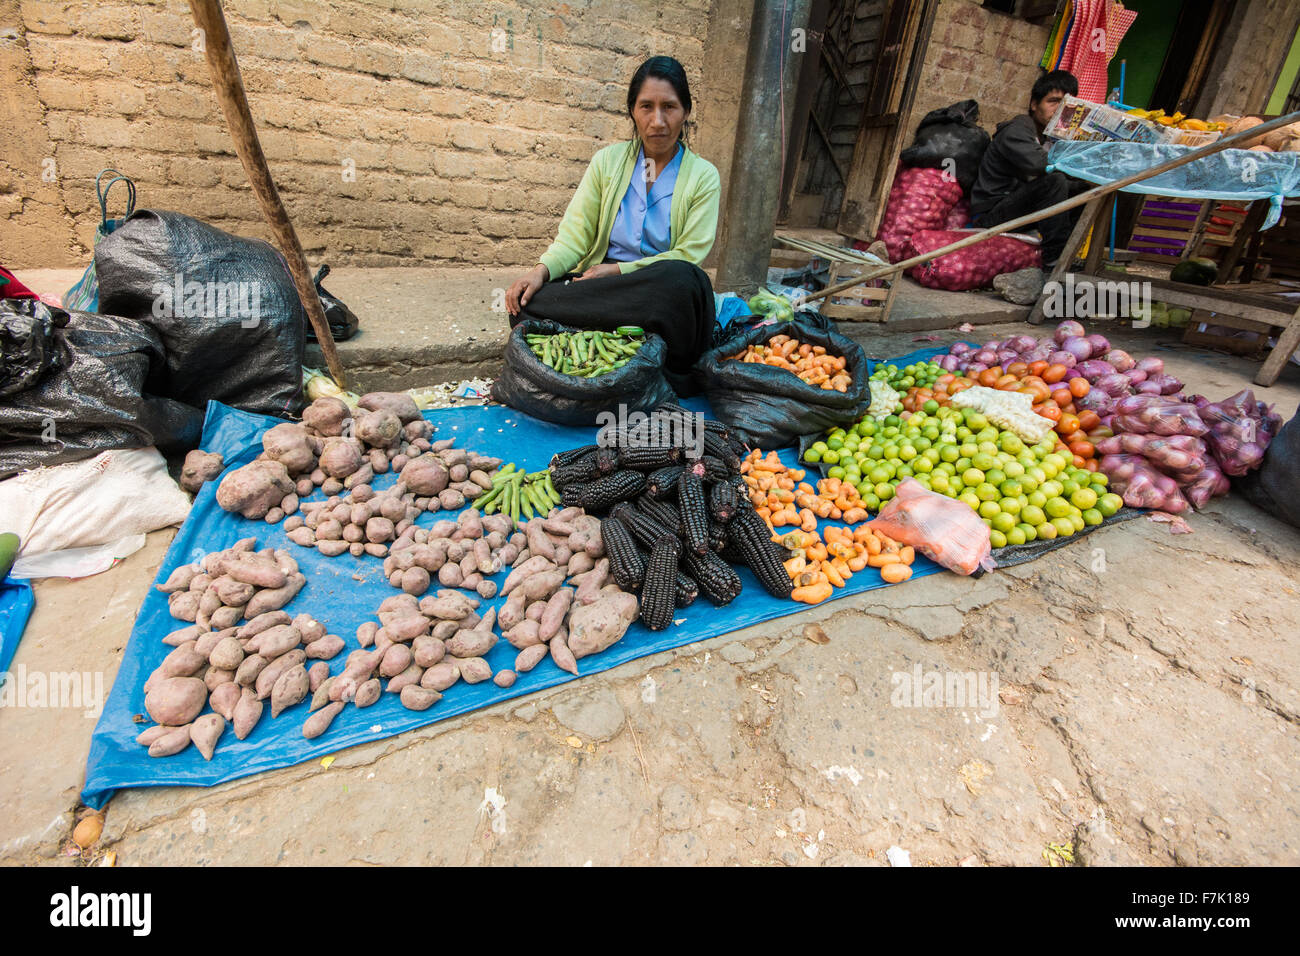 Peruanische Frau verkauft Obst und Gemüse an einer Straße Marktstand in Cajabamba, Cajamarca, Peru. Stockfoto